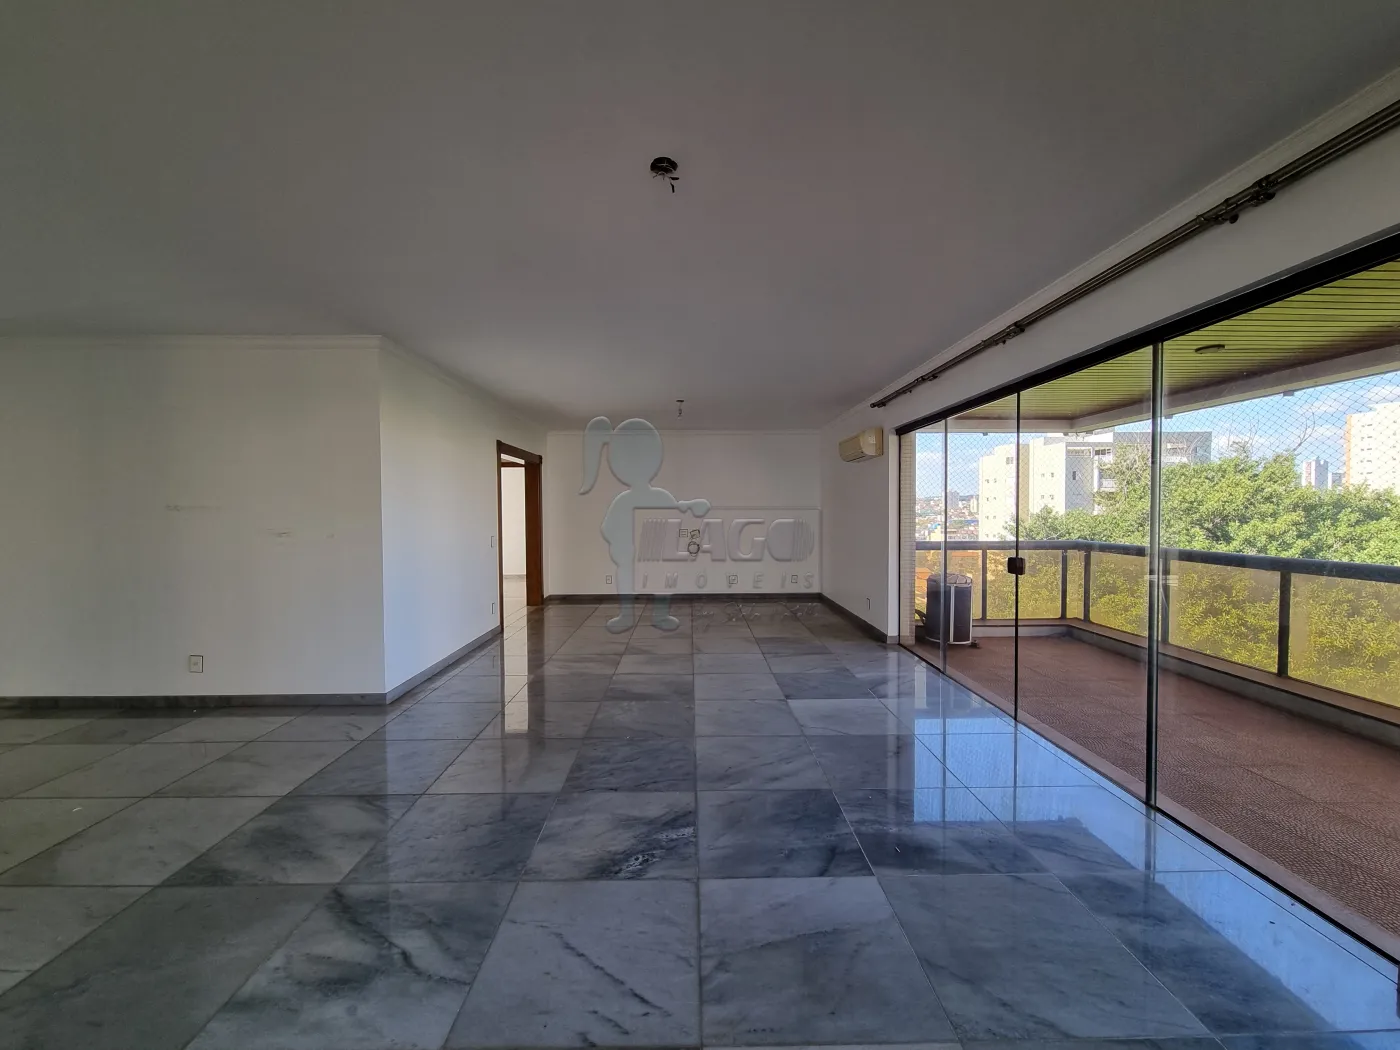 Comprar Apartamento / Padrão em Ribeirão Preto R$ 1.250.000,00 - Foto 6